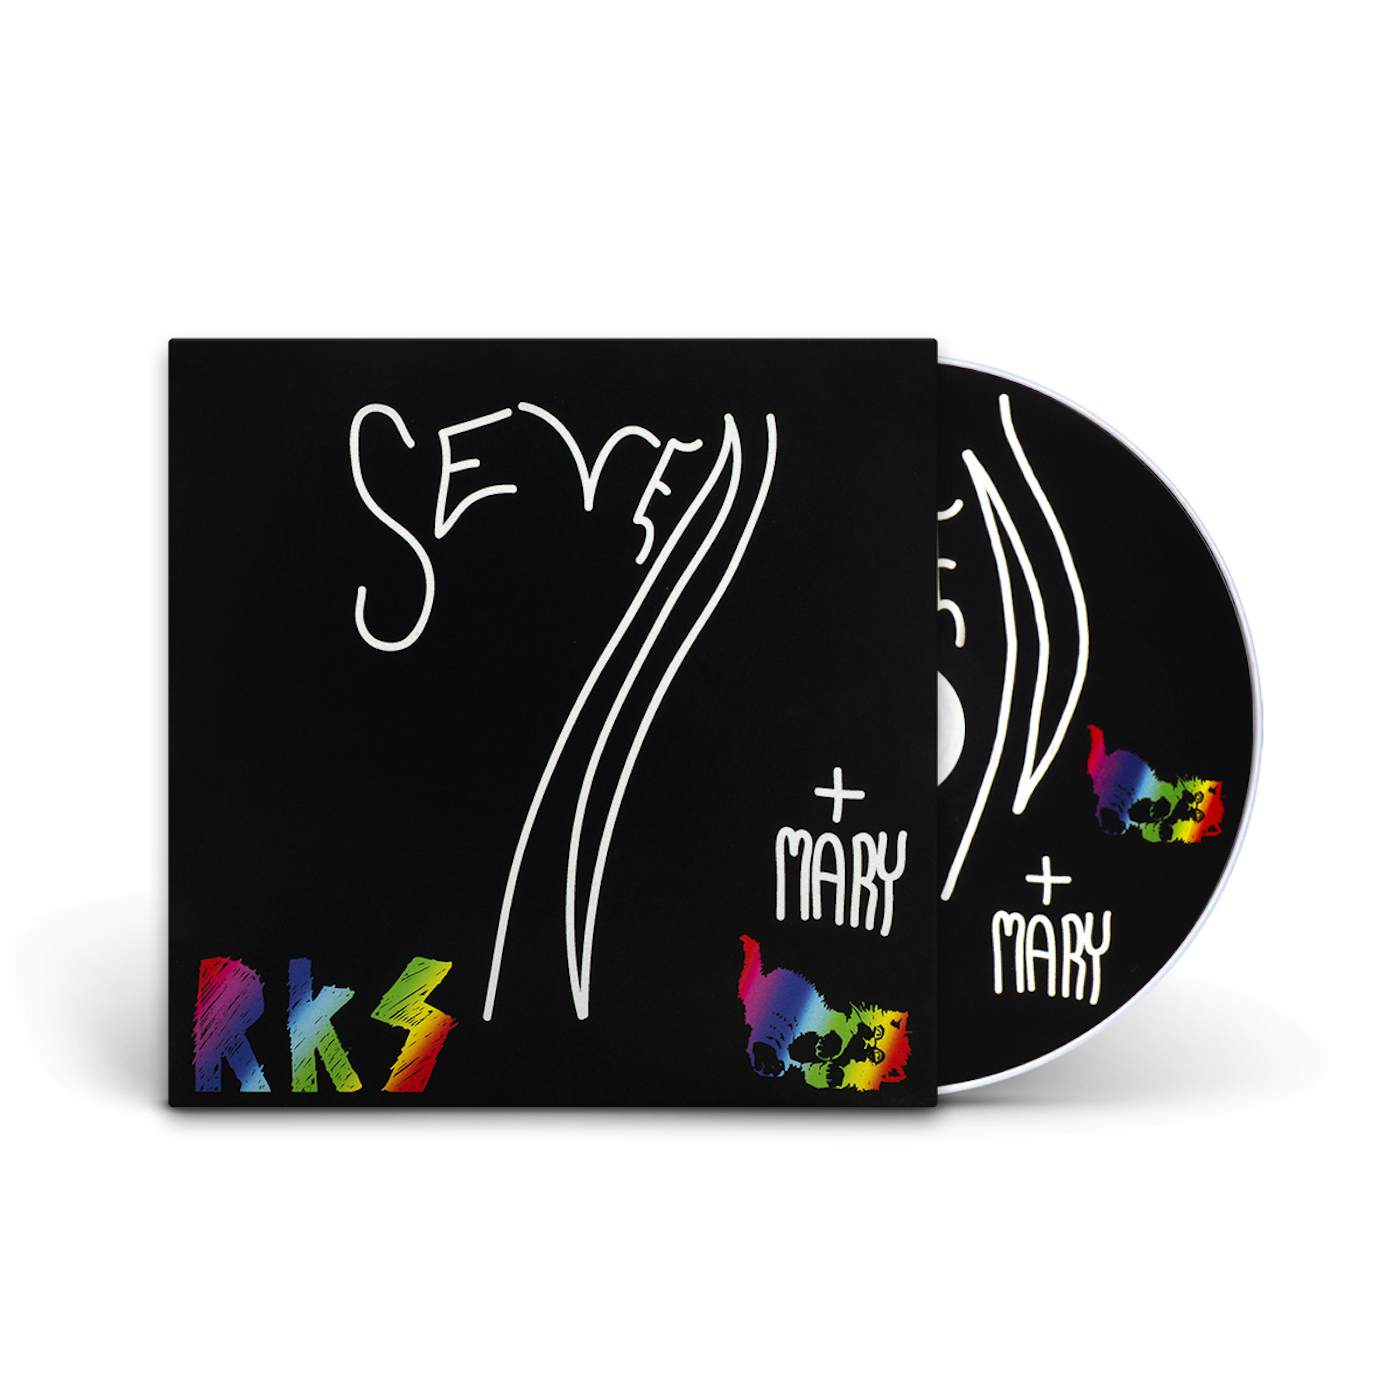 Rainbow Kitten Surprise Seven + Mary CD